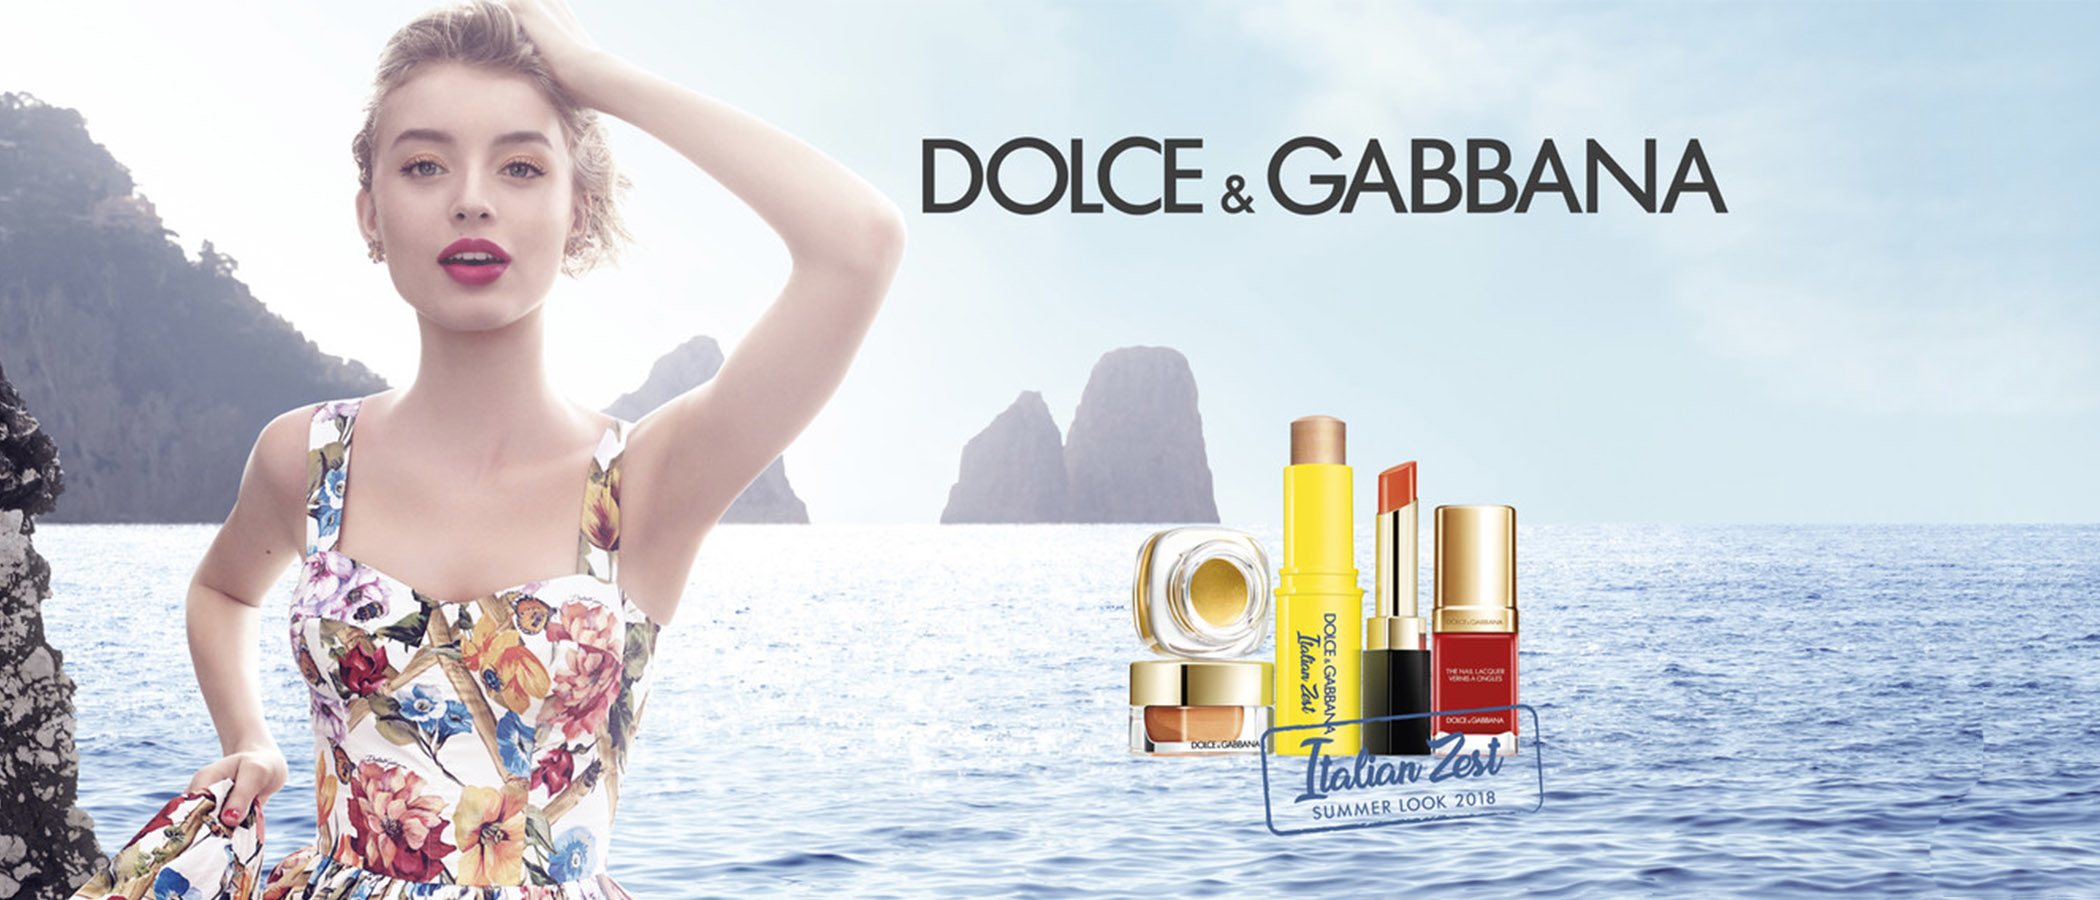 Dolce & Gabbana se inspira en el verano italiano para lanzar su luminosa y alegre colección 'Italian Zest'